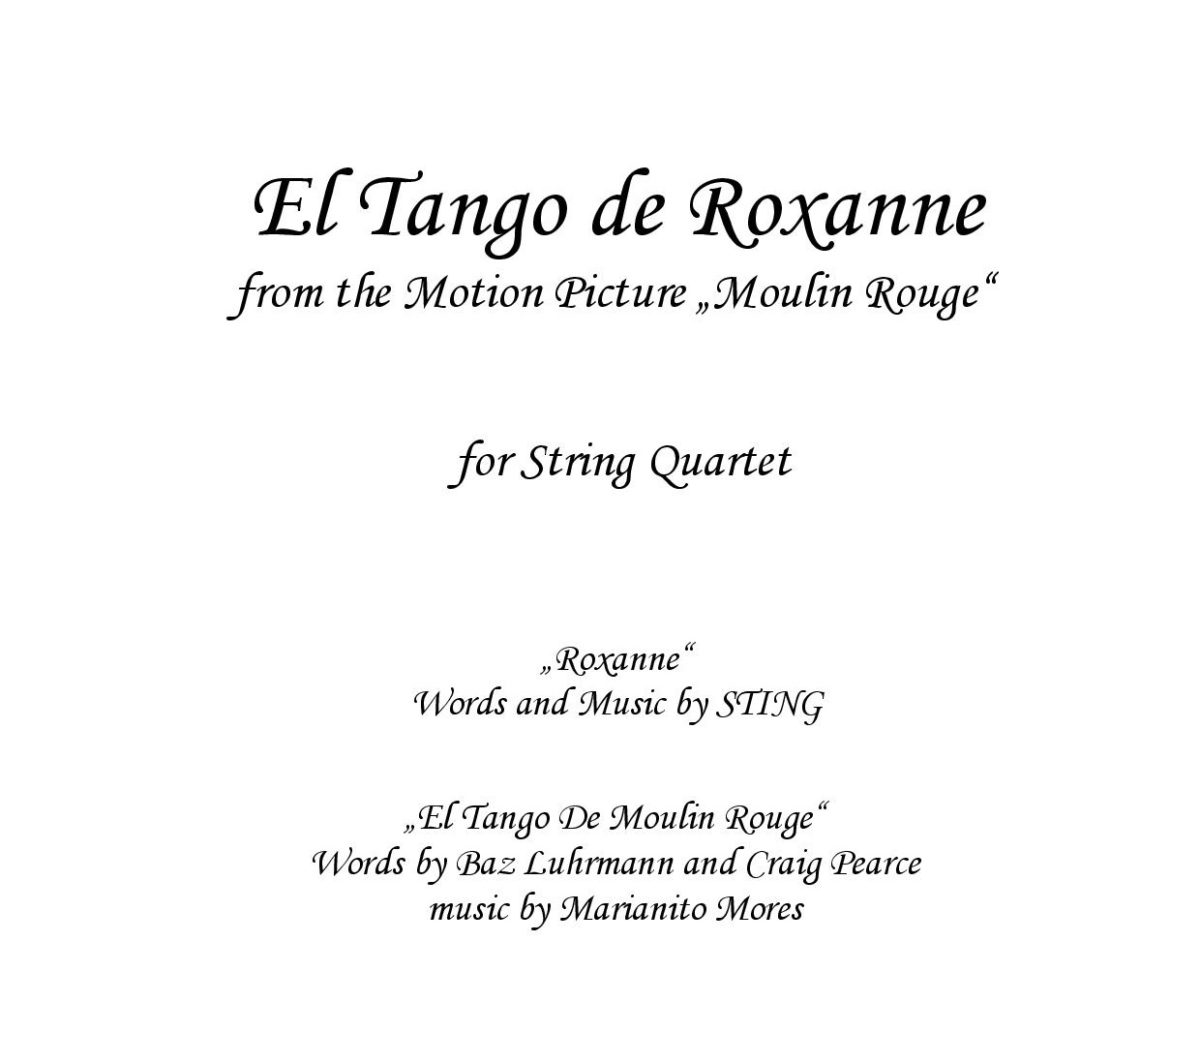 El Tango de Roxanne (Moulin Rouge) - Sheet music